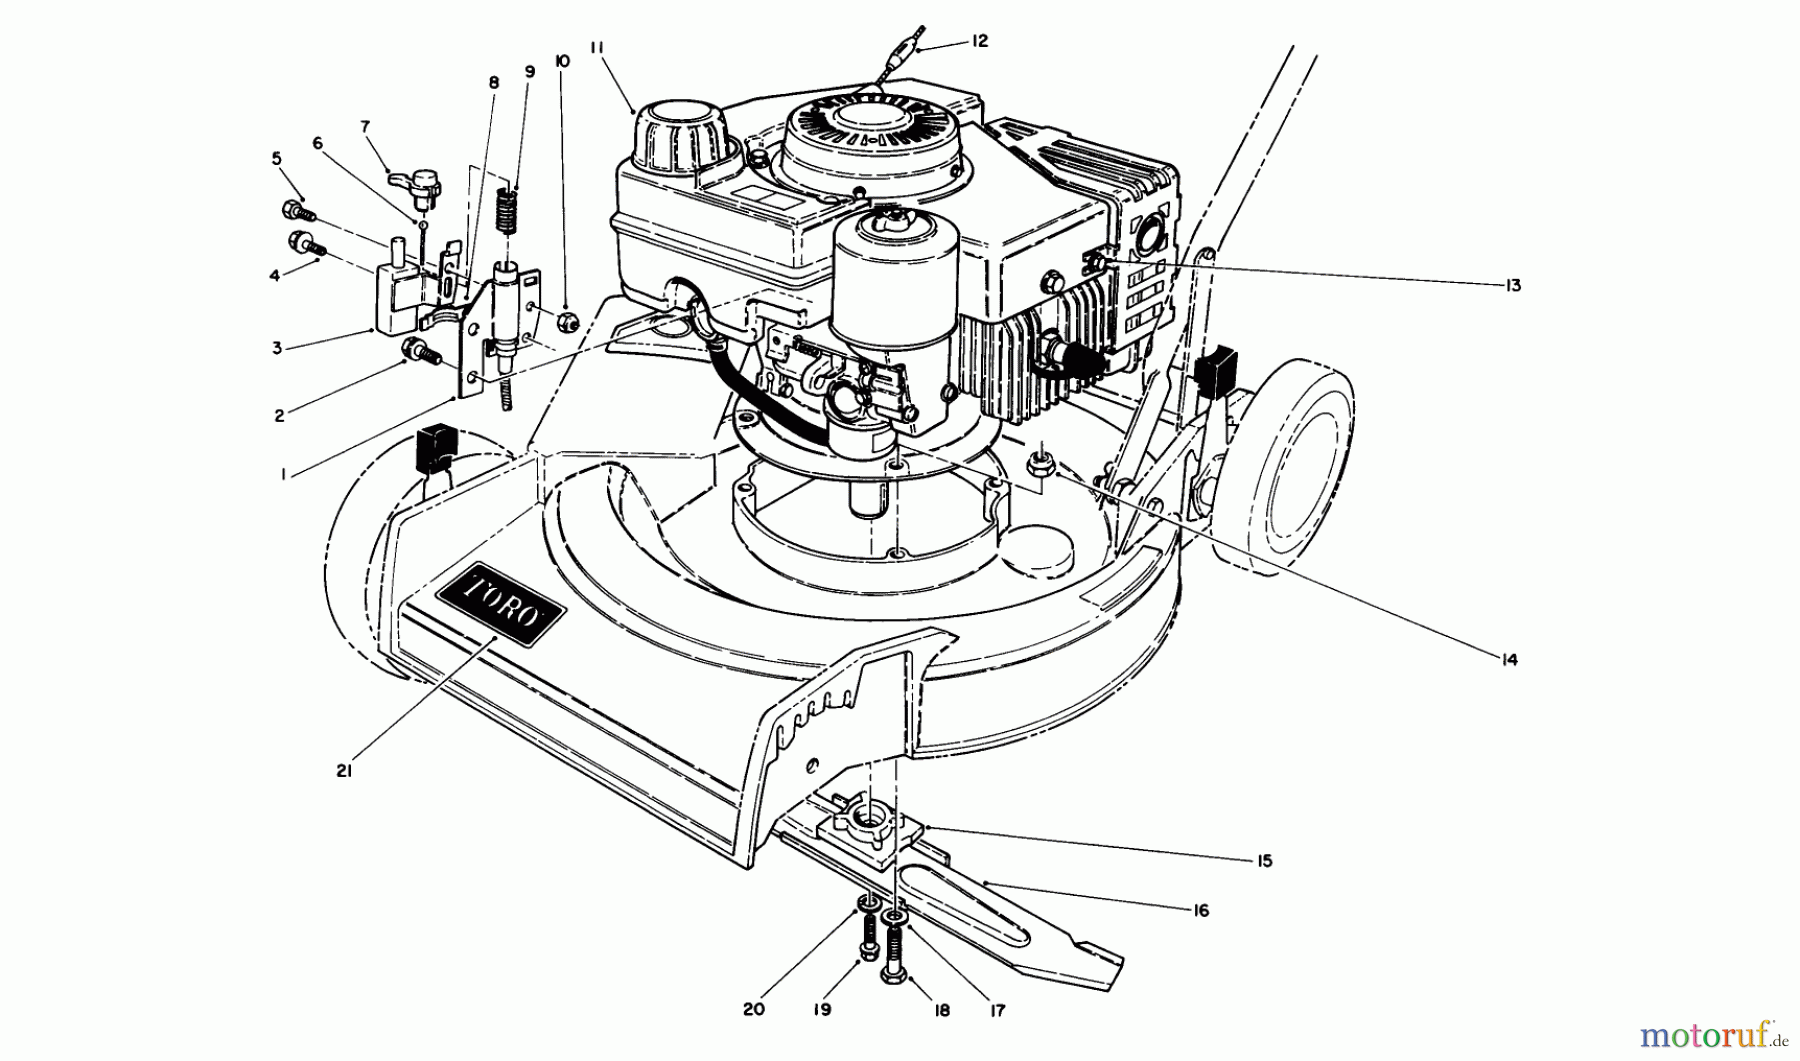  Toro Neu Mowers, Walk-Behind Seite 1 16551 - Toro Lawnmower, 1989 (9000001-9999999) ENGINE ASSEMBLY